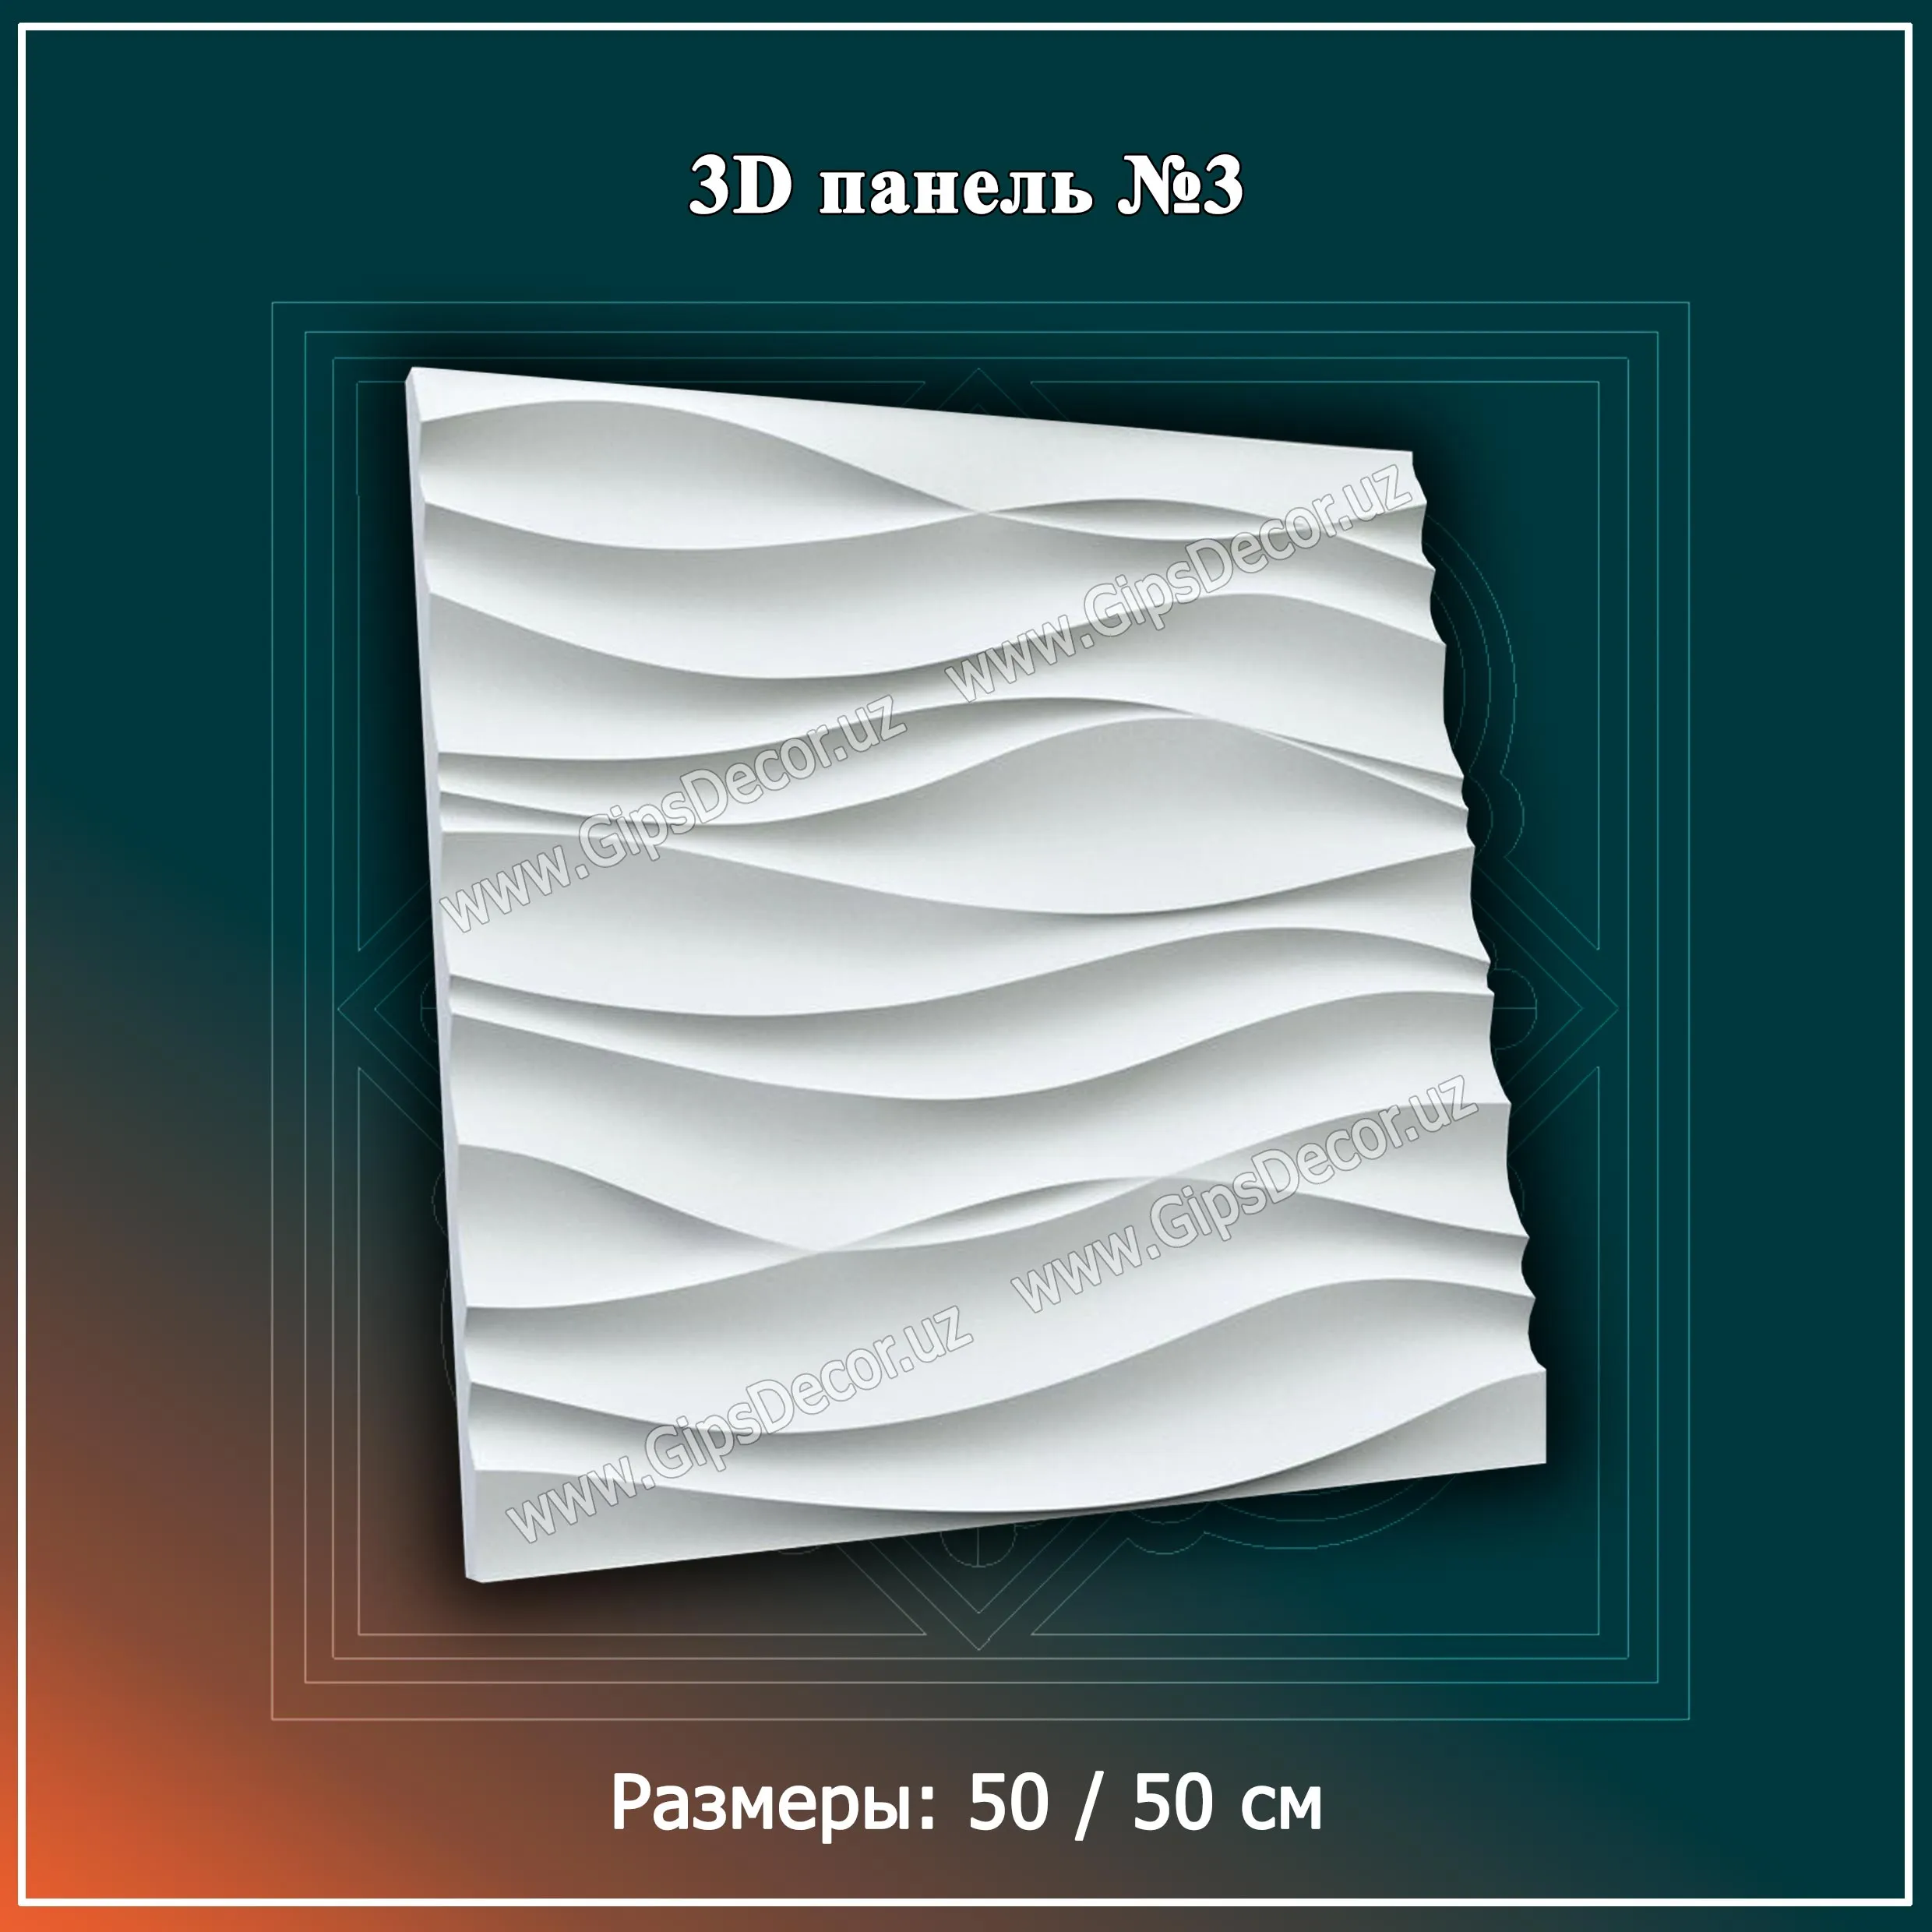 3D Панель №3 Размеры: 50 / 50 см#1